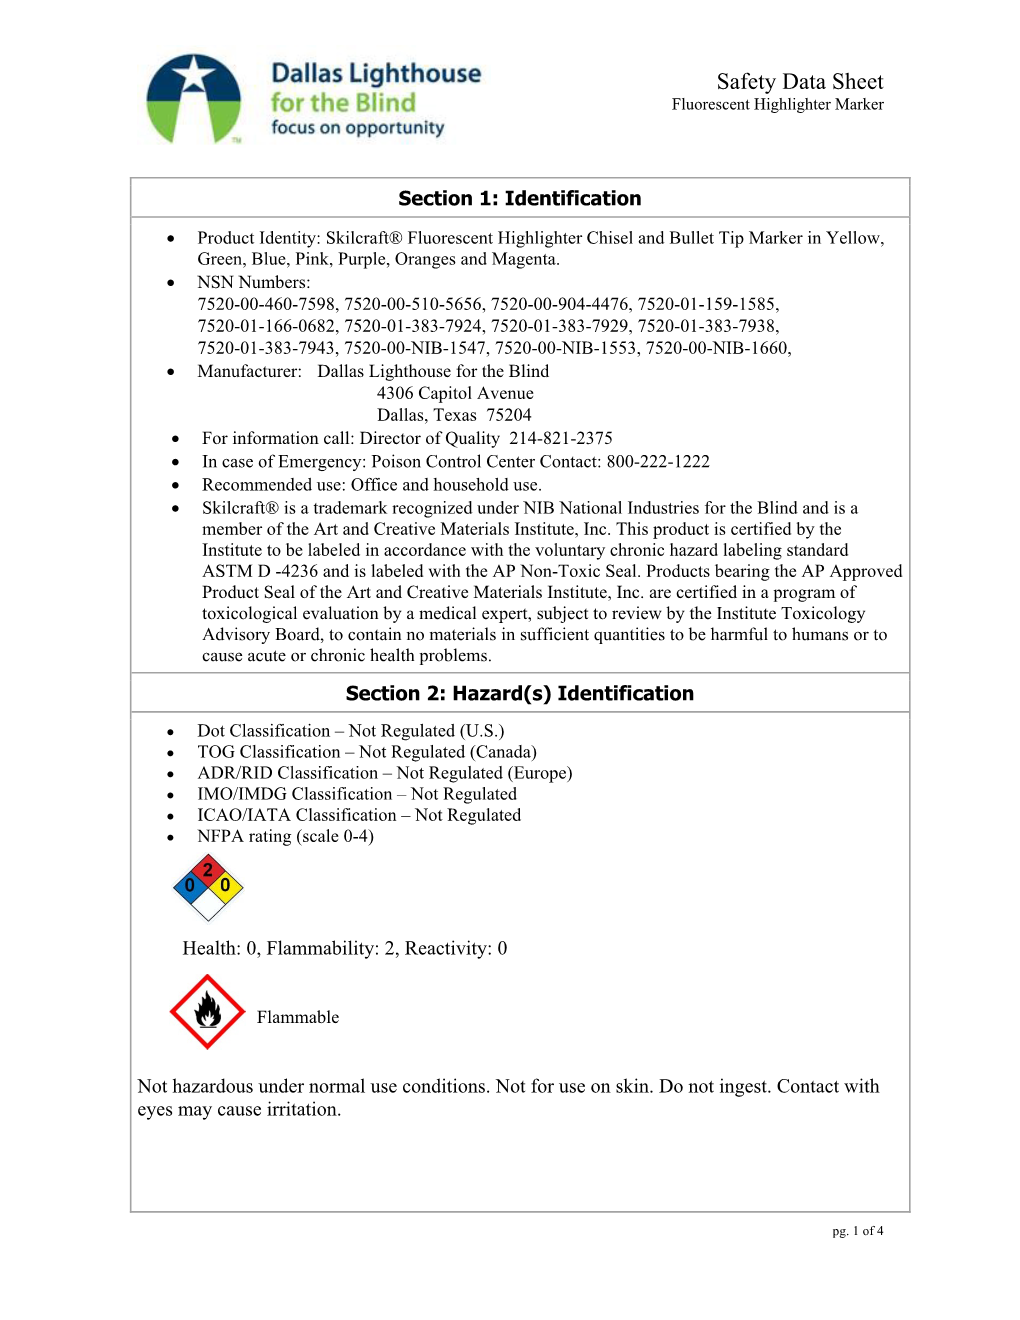 Safety Data Sheet Fluorescent Highlighter Marker